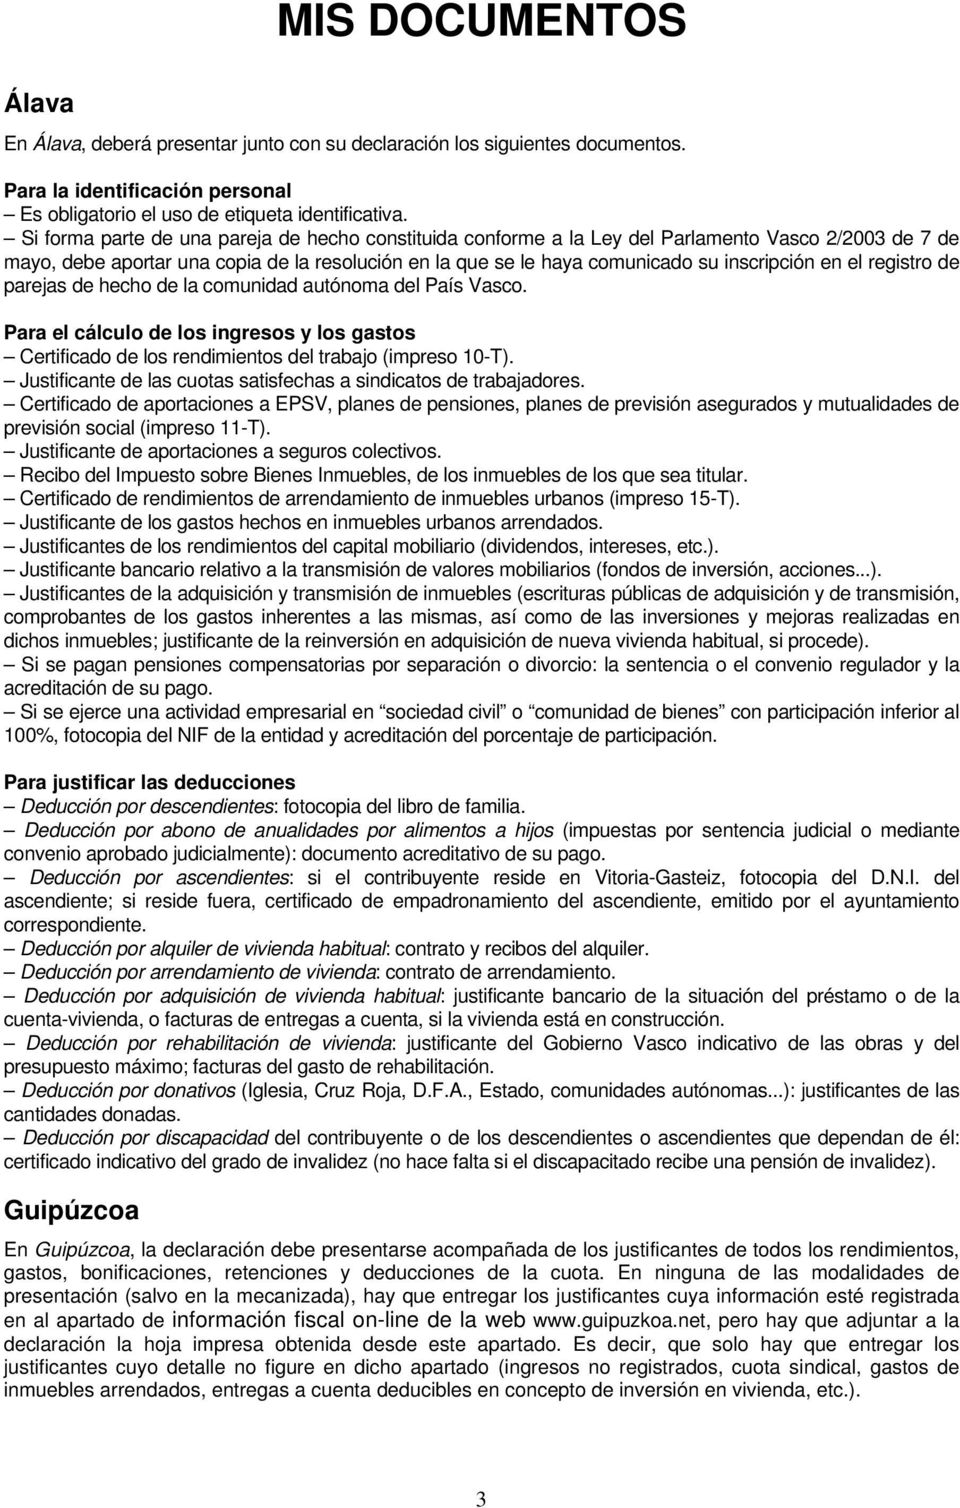 el registro de parejas de hecho de la comunidad autónoma del País Vasco. Para el cálculo de los ingresos y los gastos Certificado de los rendimientos del trabajo (impreso 10-T).